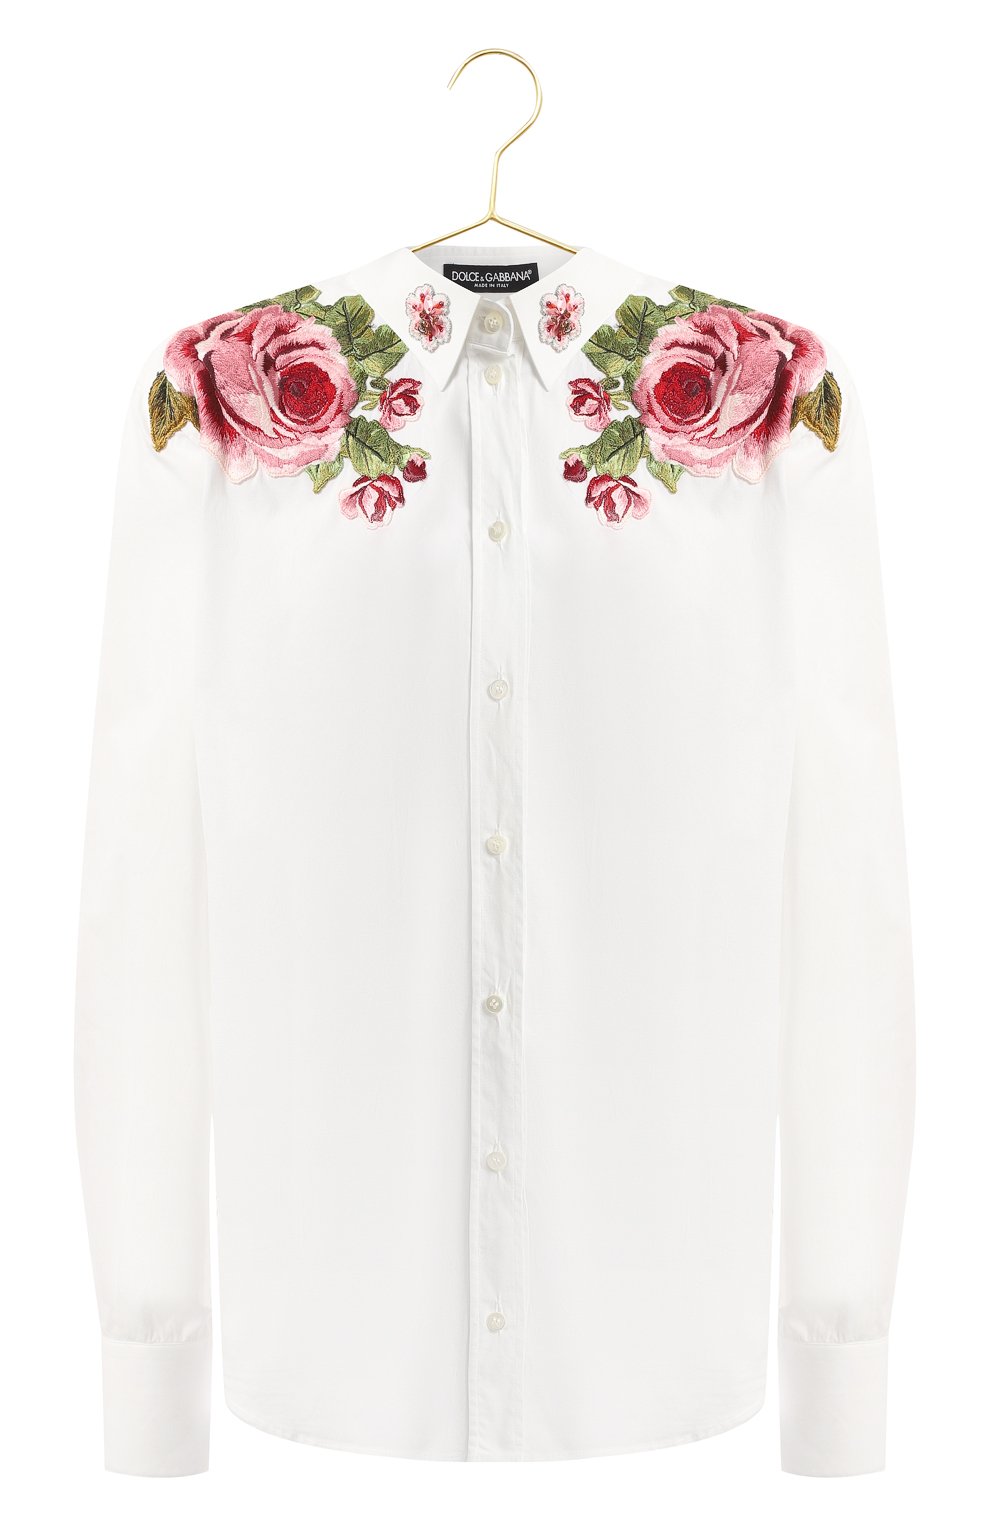 Хлопковая рубашка | Dolce & Gabbana | Белый - 1